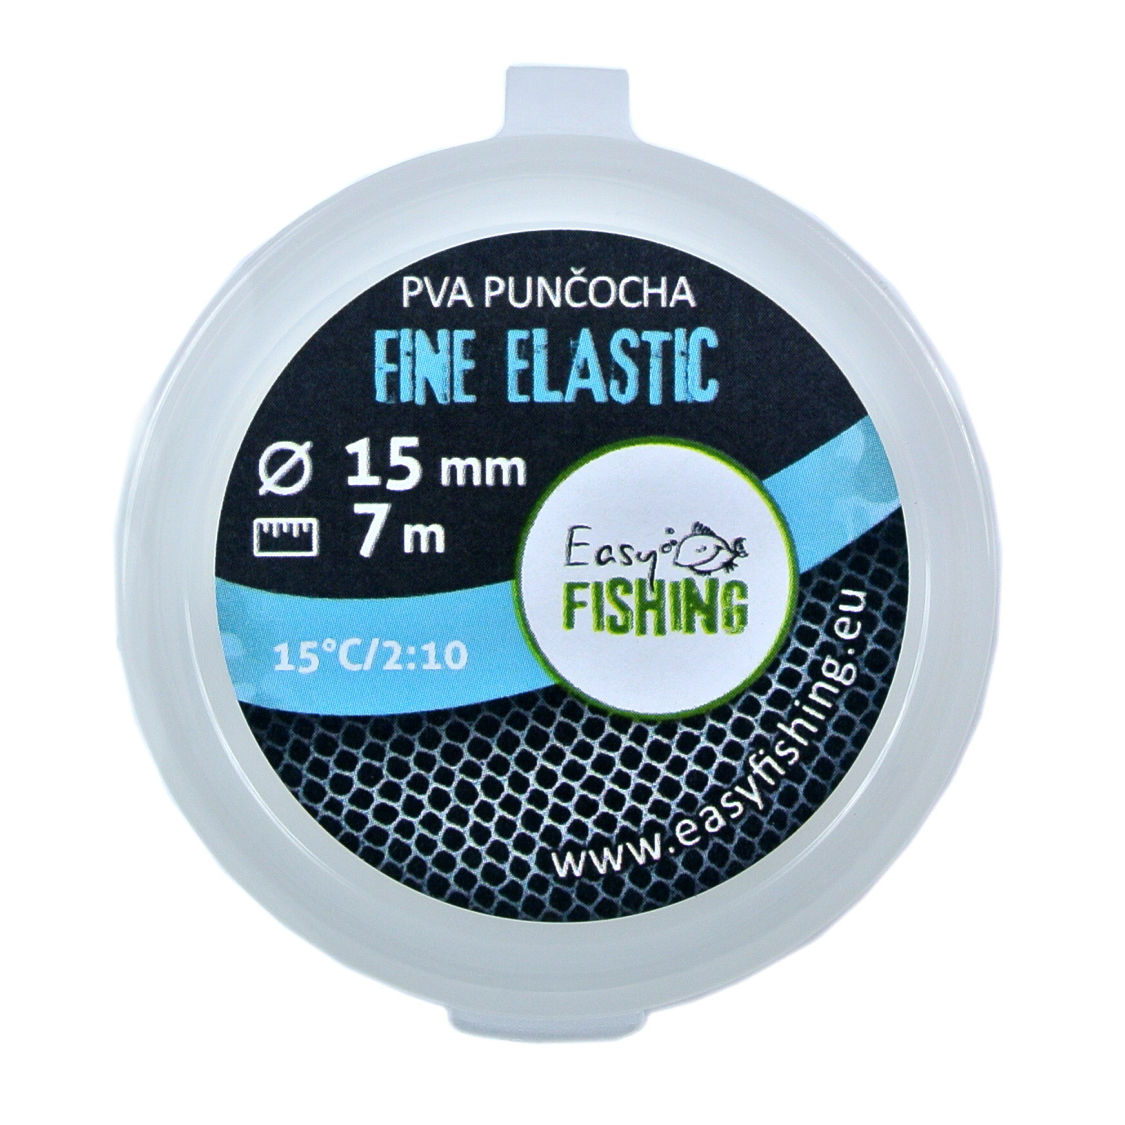 EasyFISHING náhradní PVA punčocha Elastic Fine 7m Průměr: 15mm